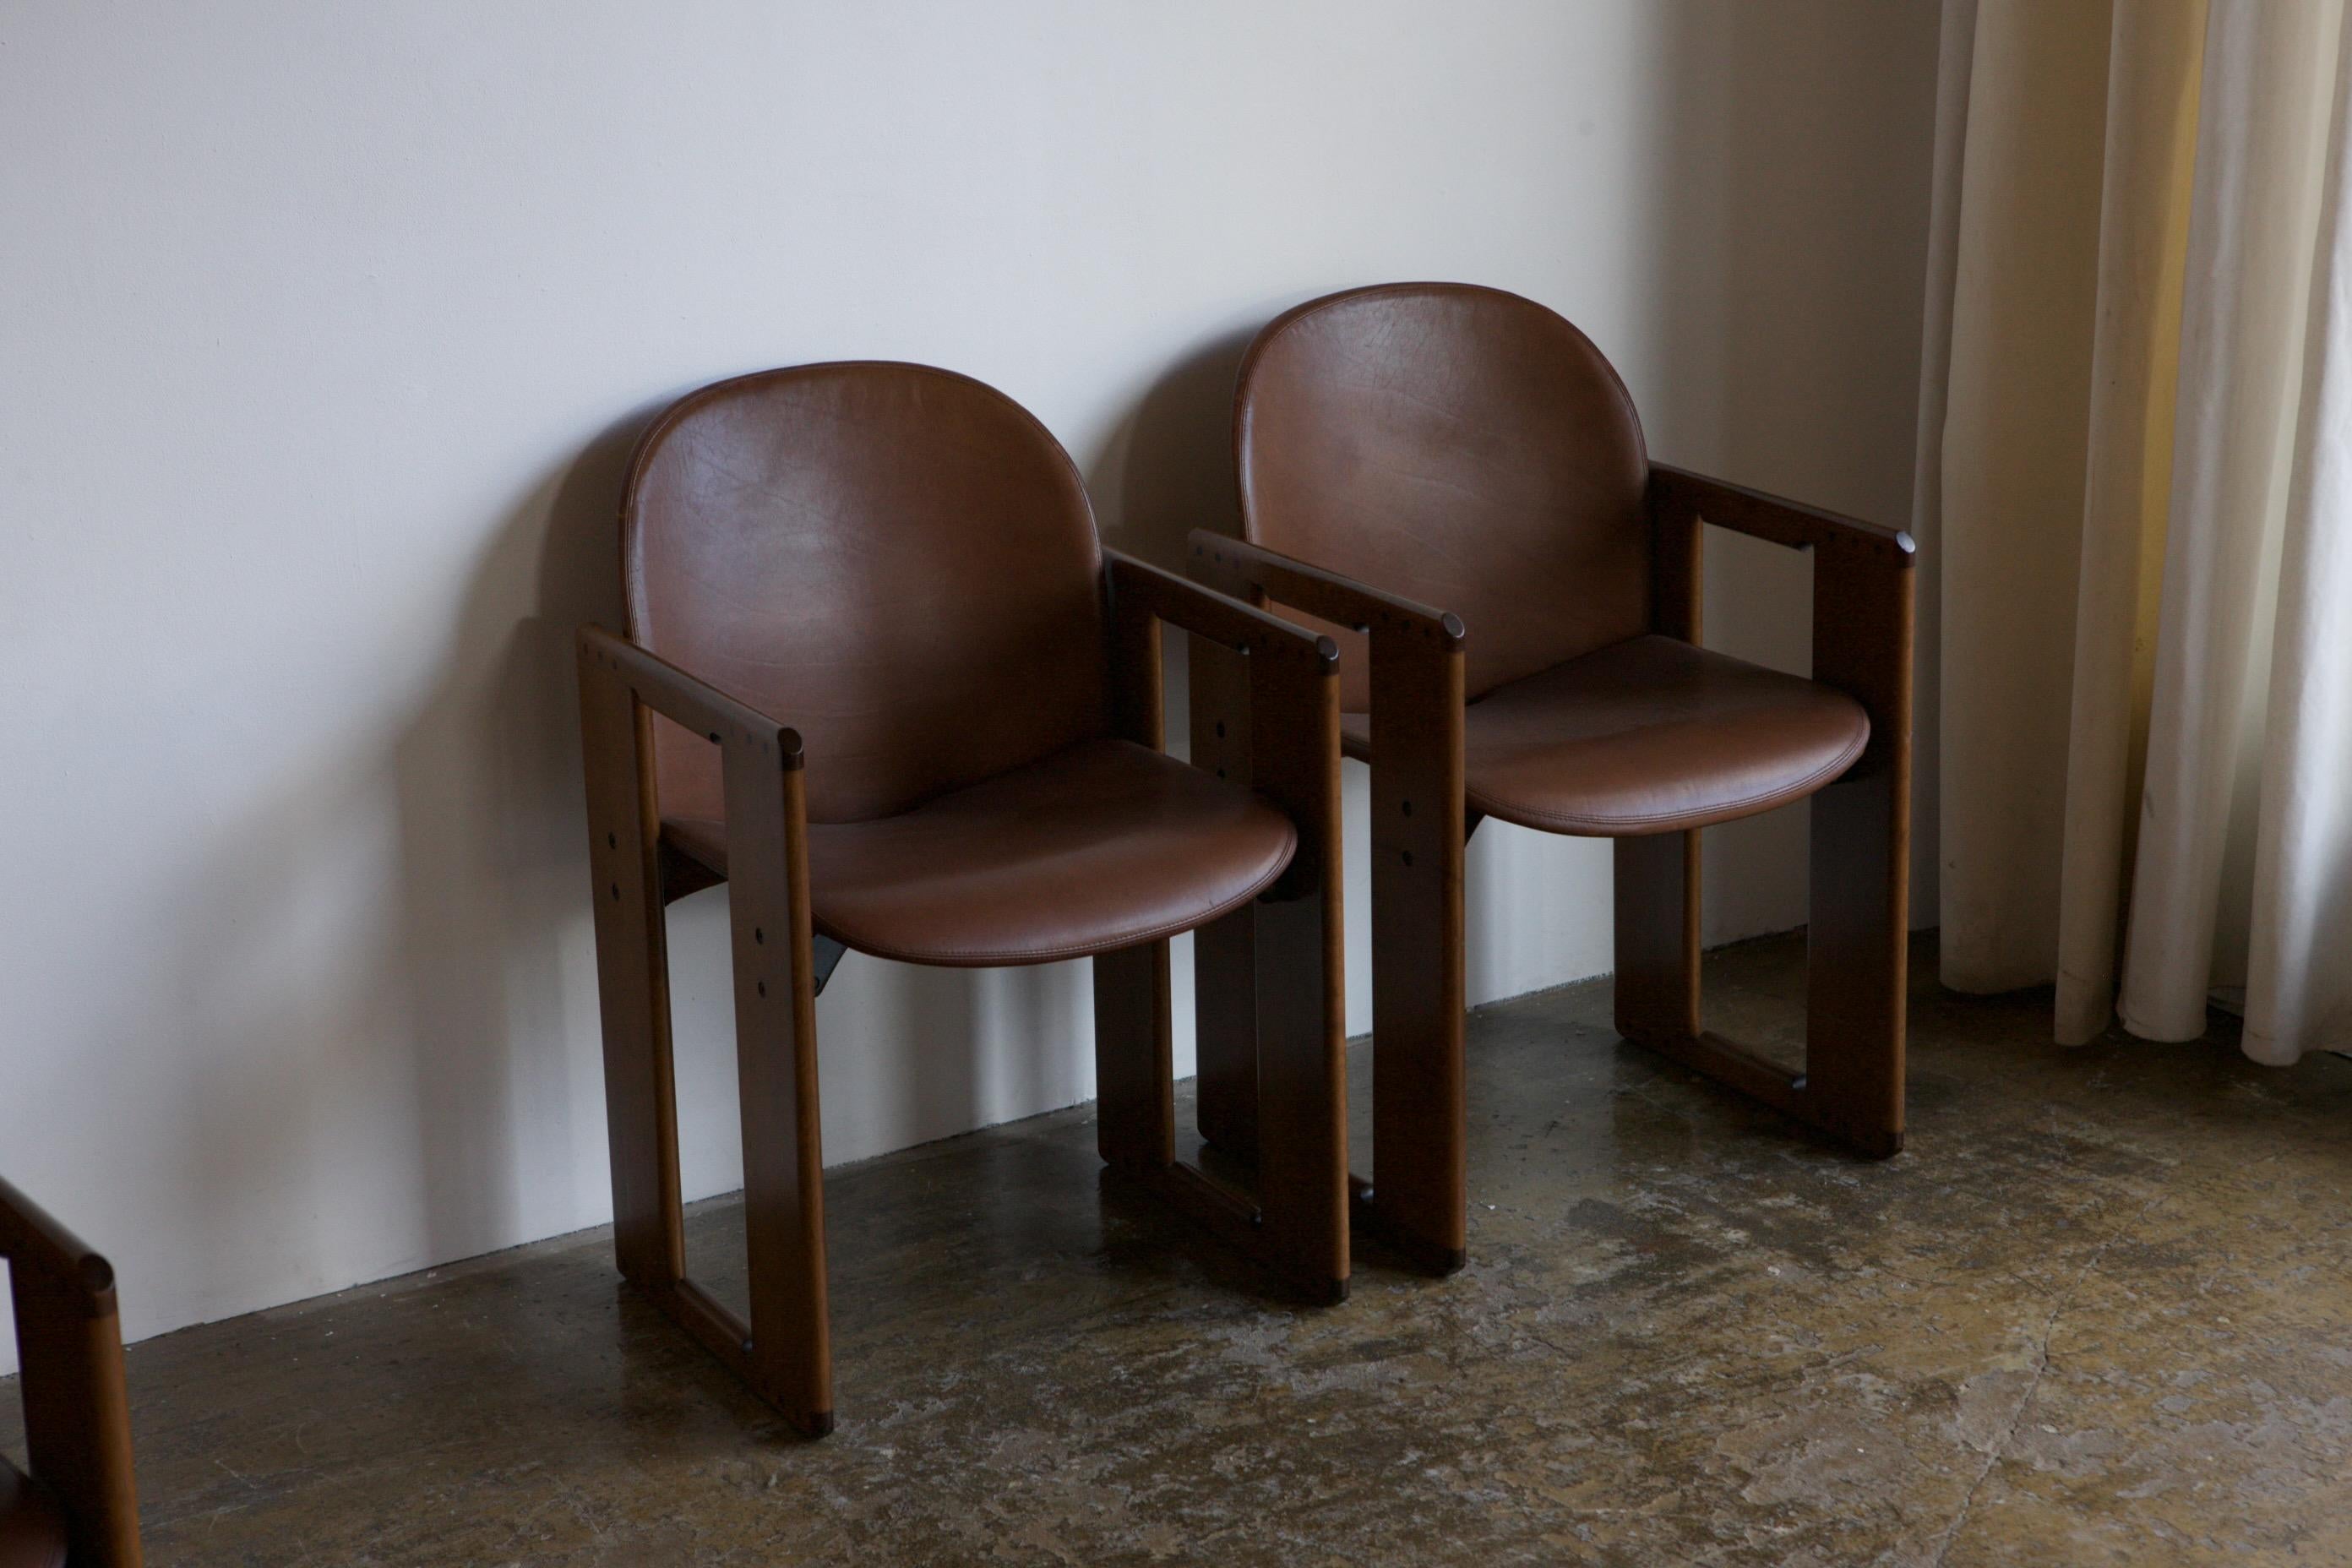 La chaise de salle à manger Dialogo, un modèle emblématique et très recherché, a été conçue en 1974 par Afra et Tobia Scarpa pour BB Italia. Celui-ci est en très bon état, le cuir cognac a été extrêmement soigné, de même que le bois et les